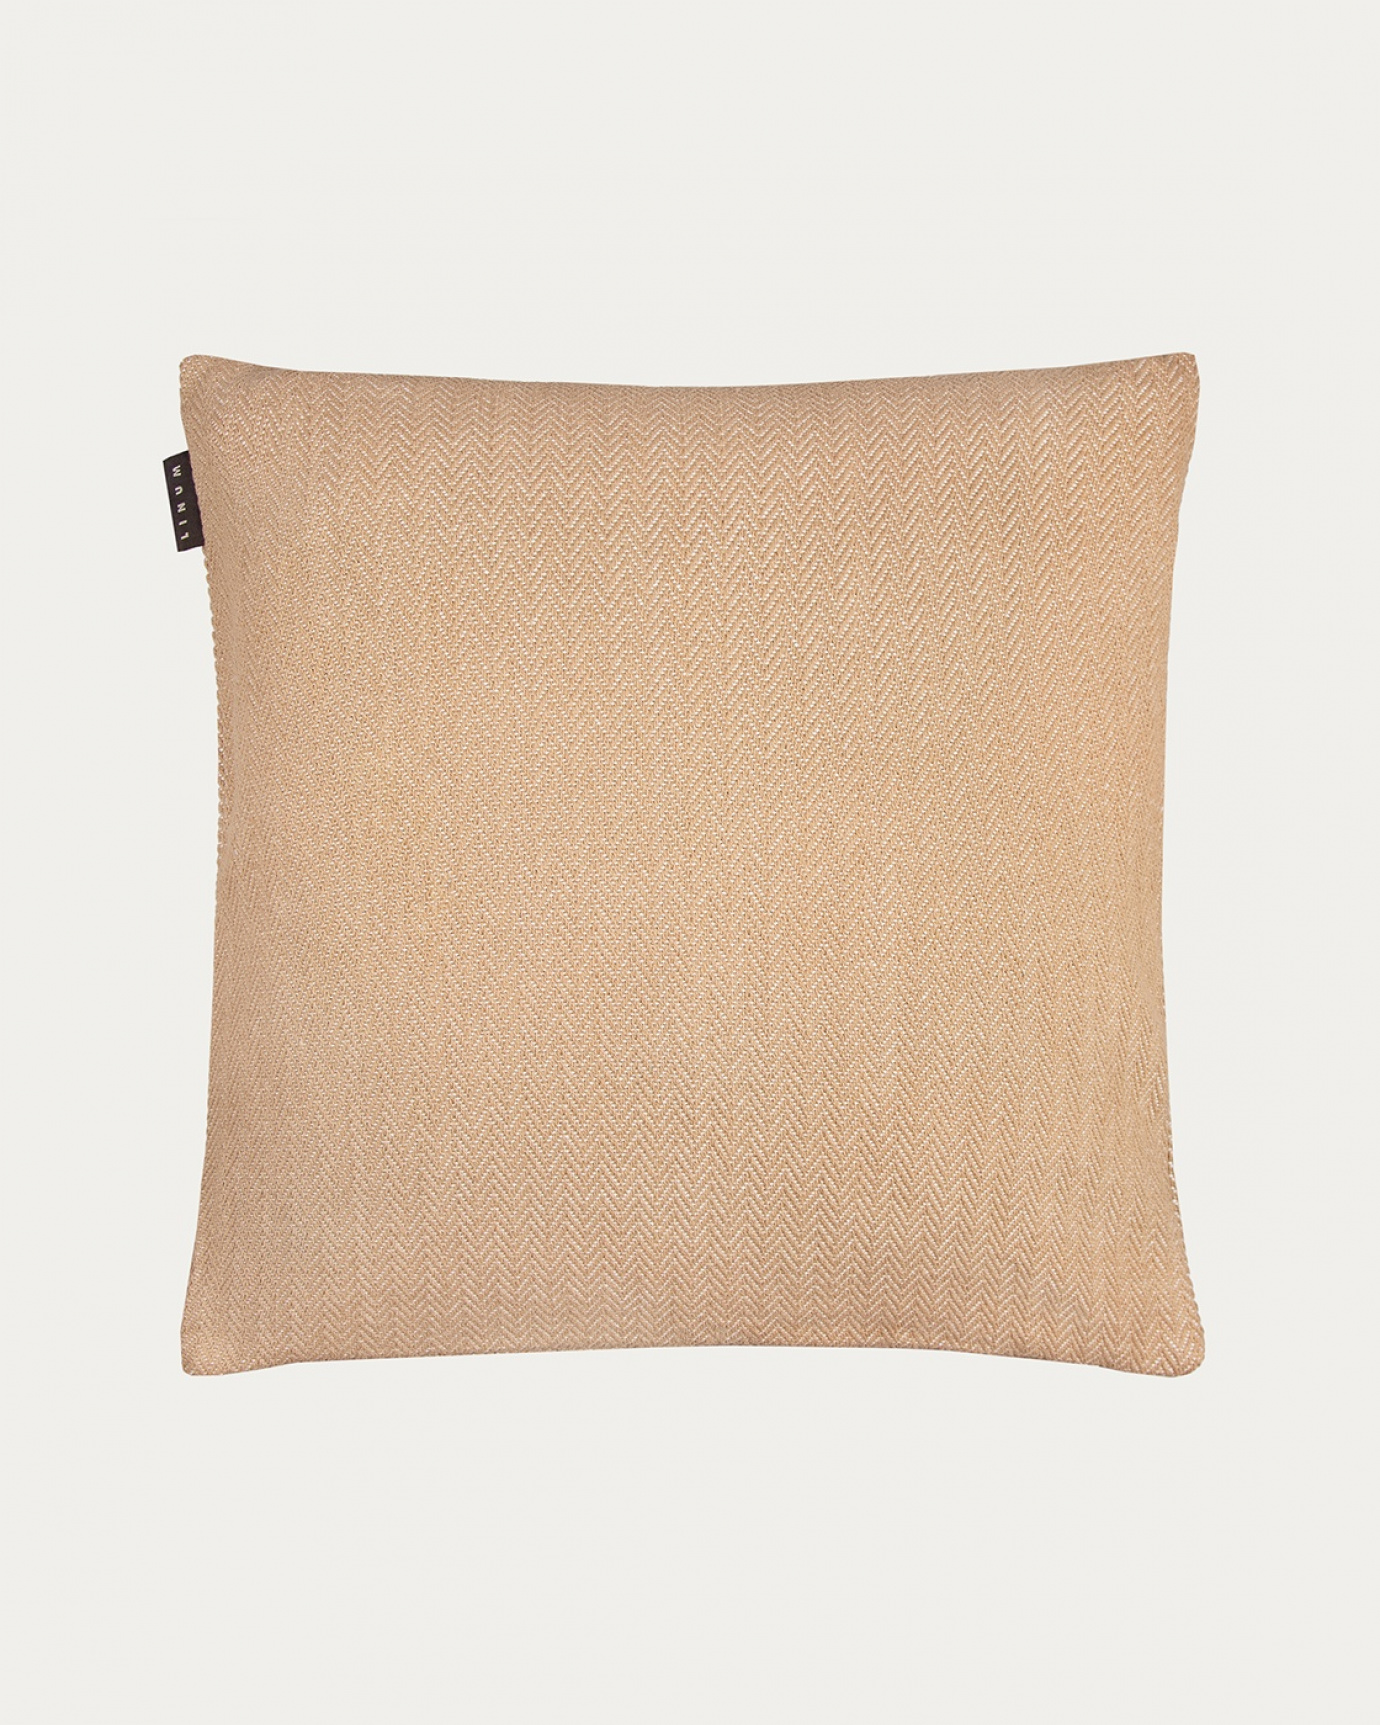 Image du produit housse de coussin SHEPARD camel en coton doux avec un motif à chevrons discret de LINUM DESIGN. Taille 50 x 50 cm.